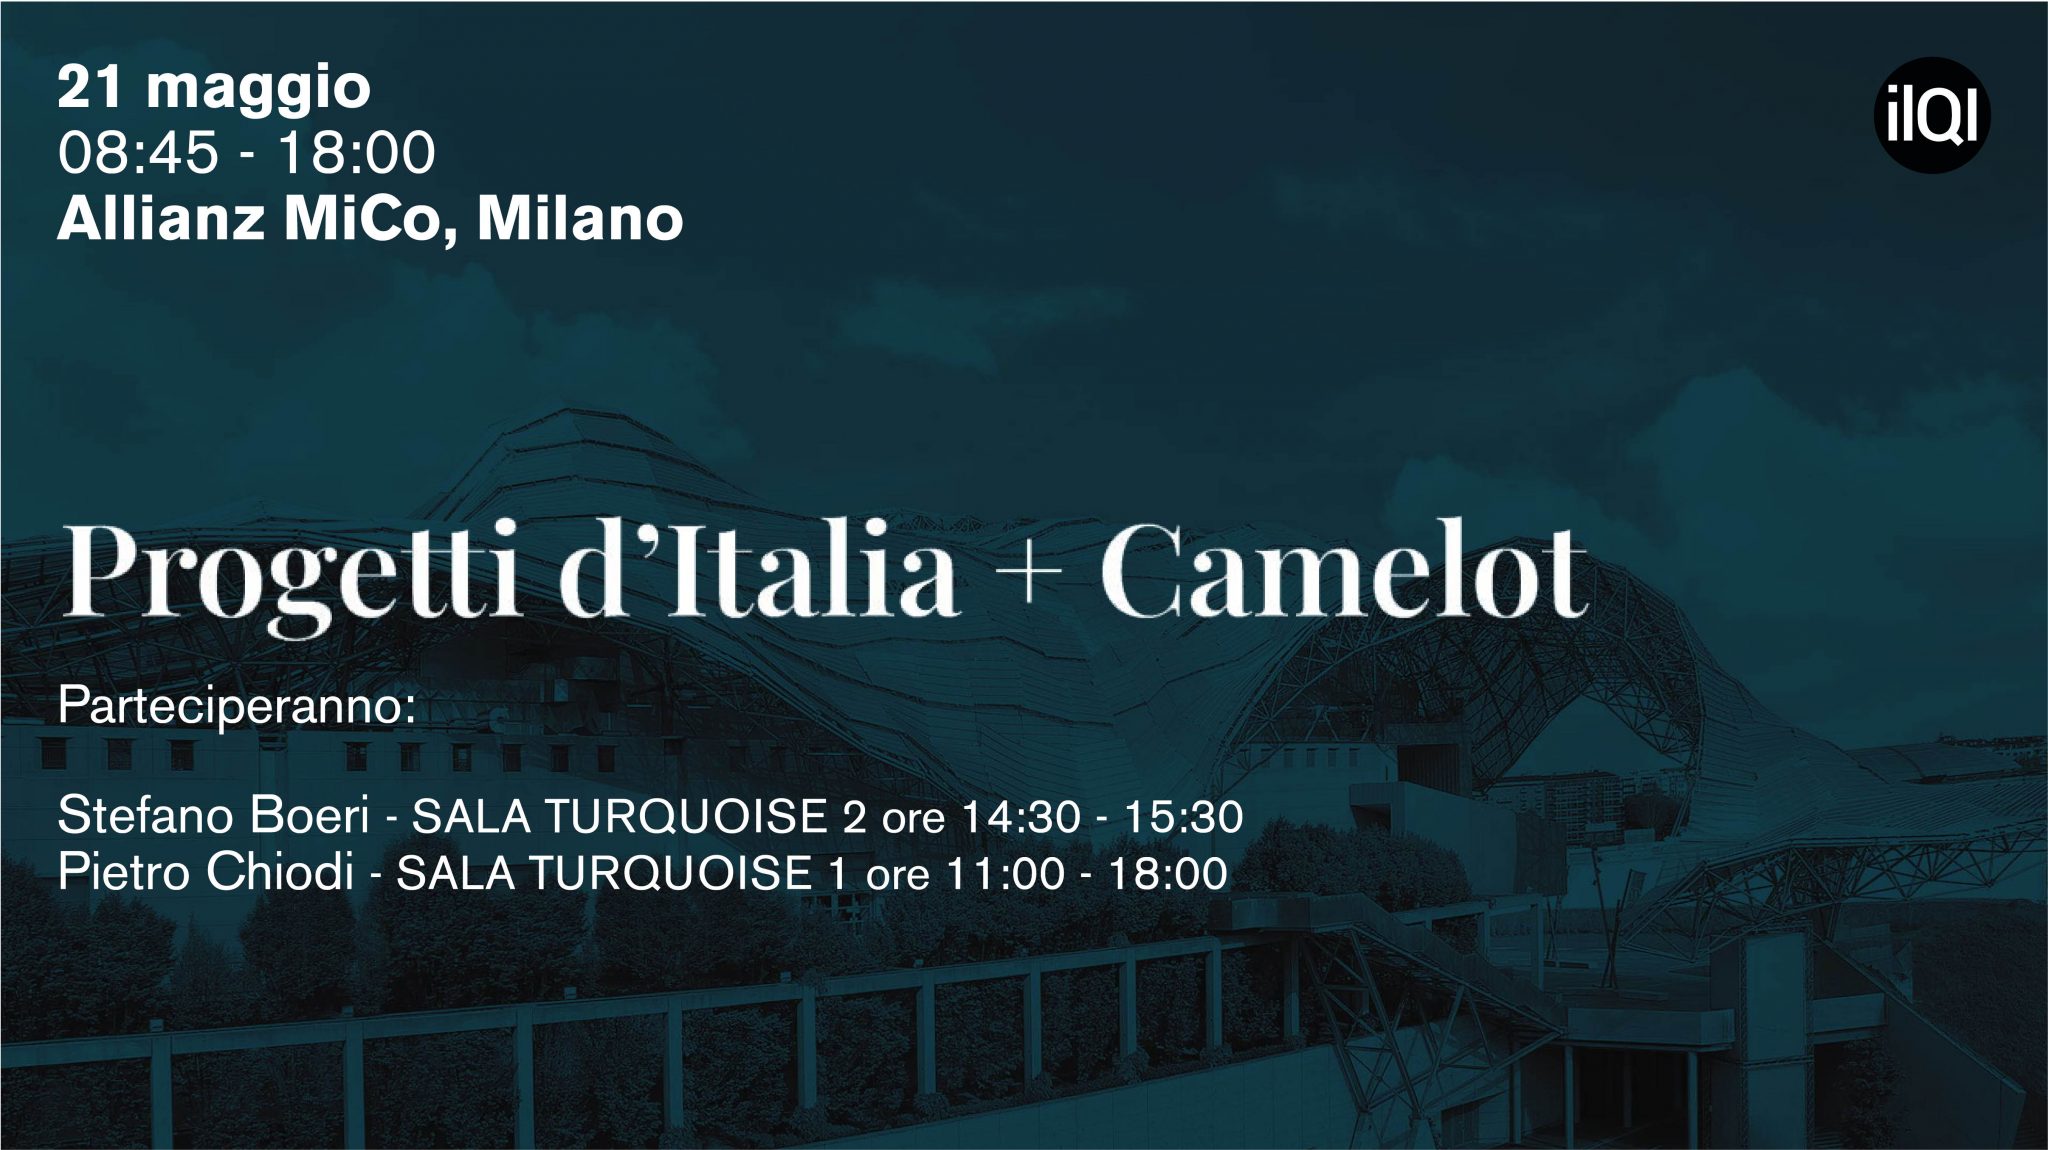 Stefano Boeri Architetti partecipa all'evento Progetti d'Italia + Camelot